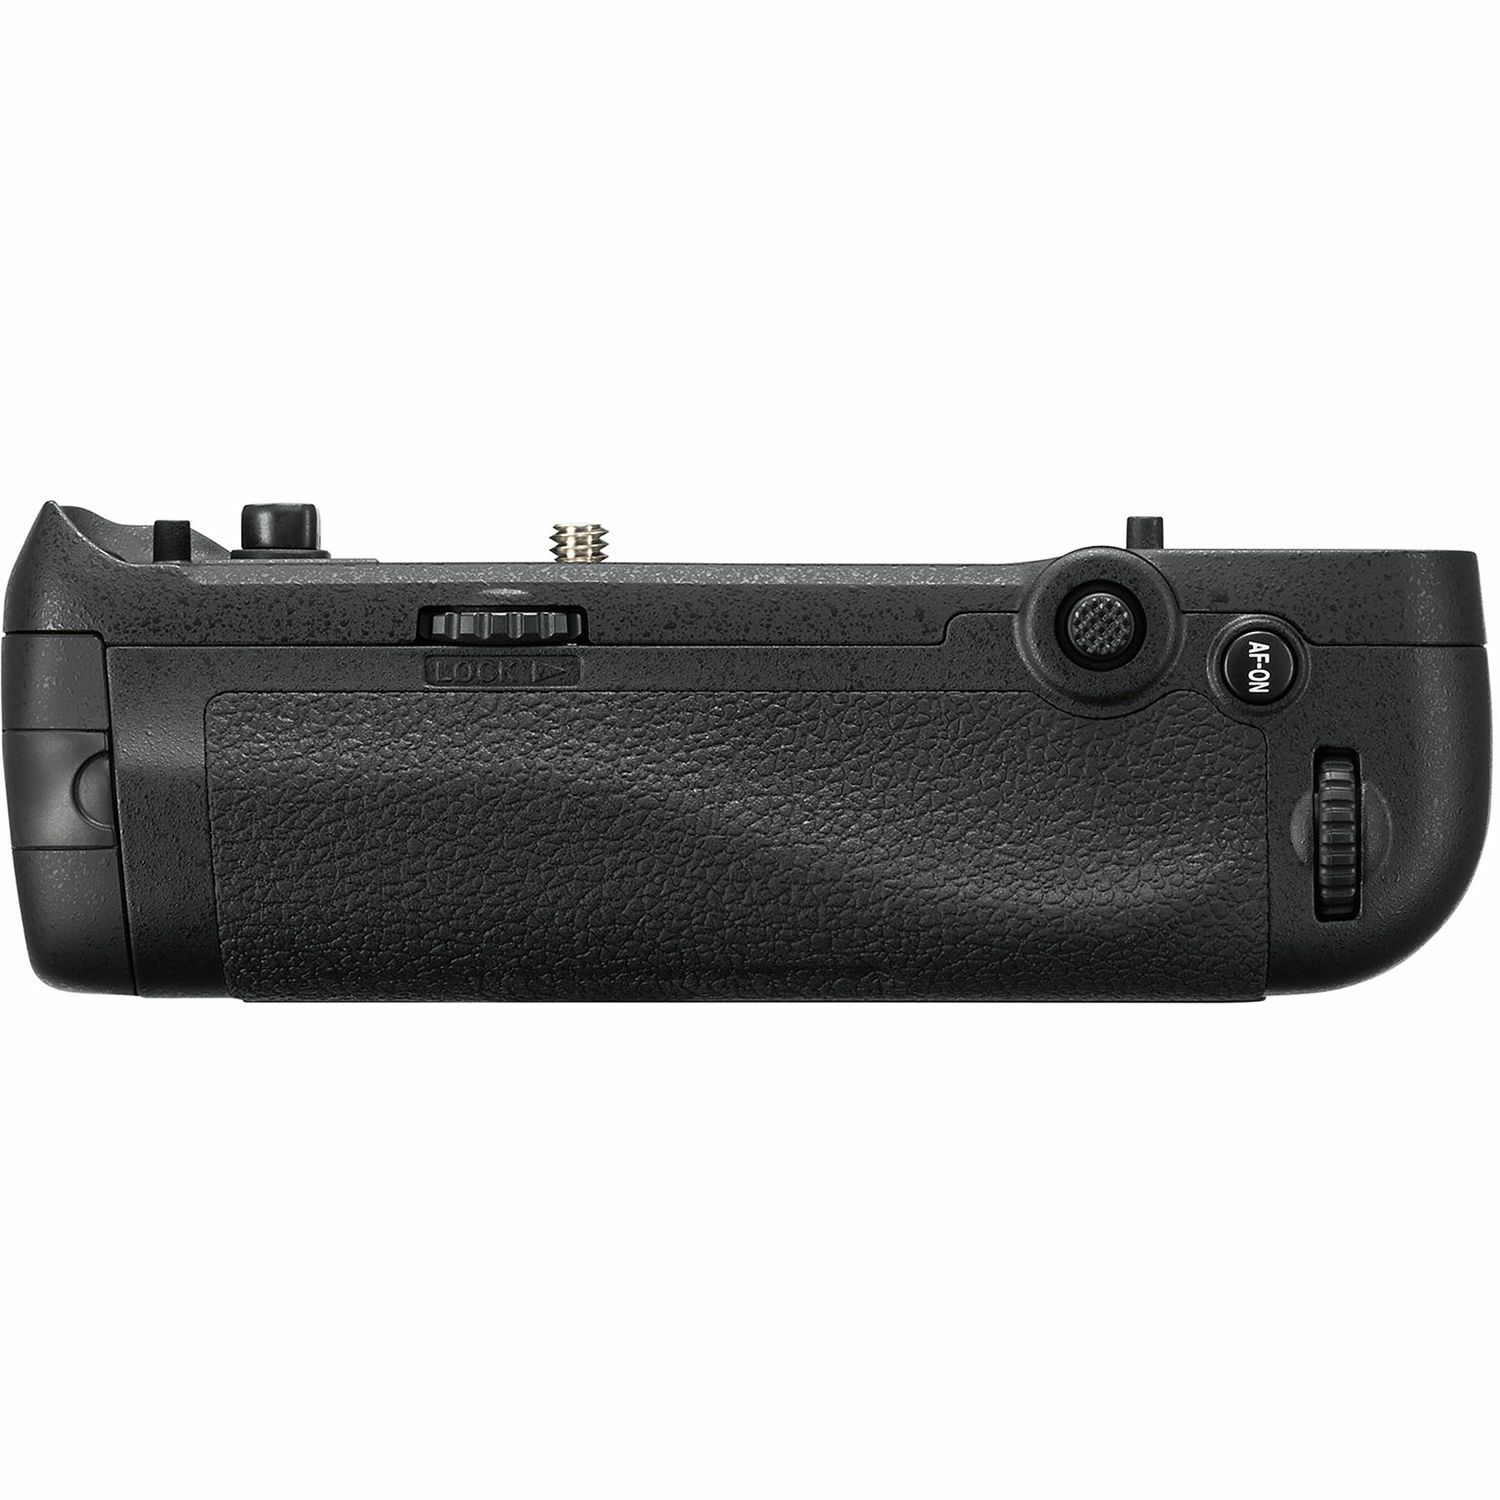 Nikon MB-D18 Multi-Power Battery Pack grip držač baterija za D850 (VFC00701)